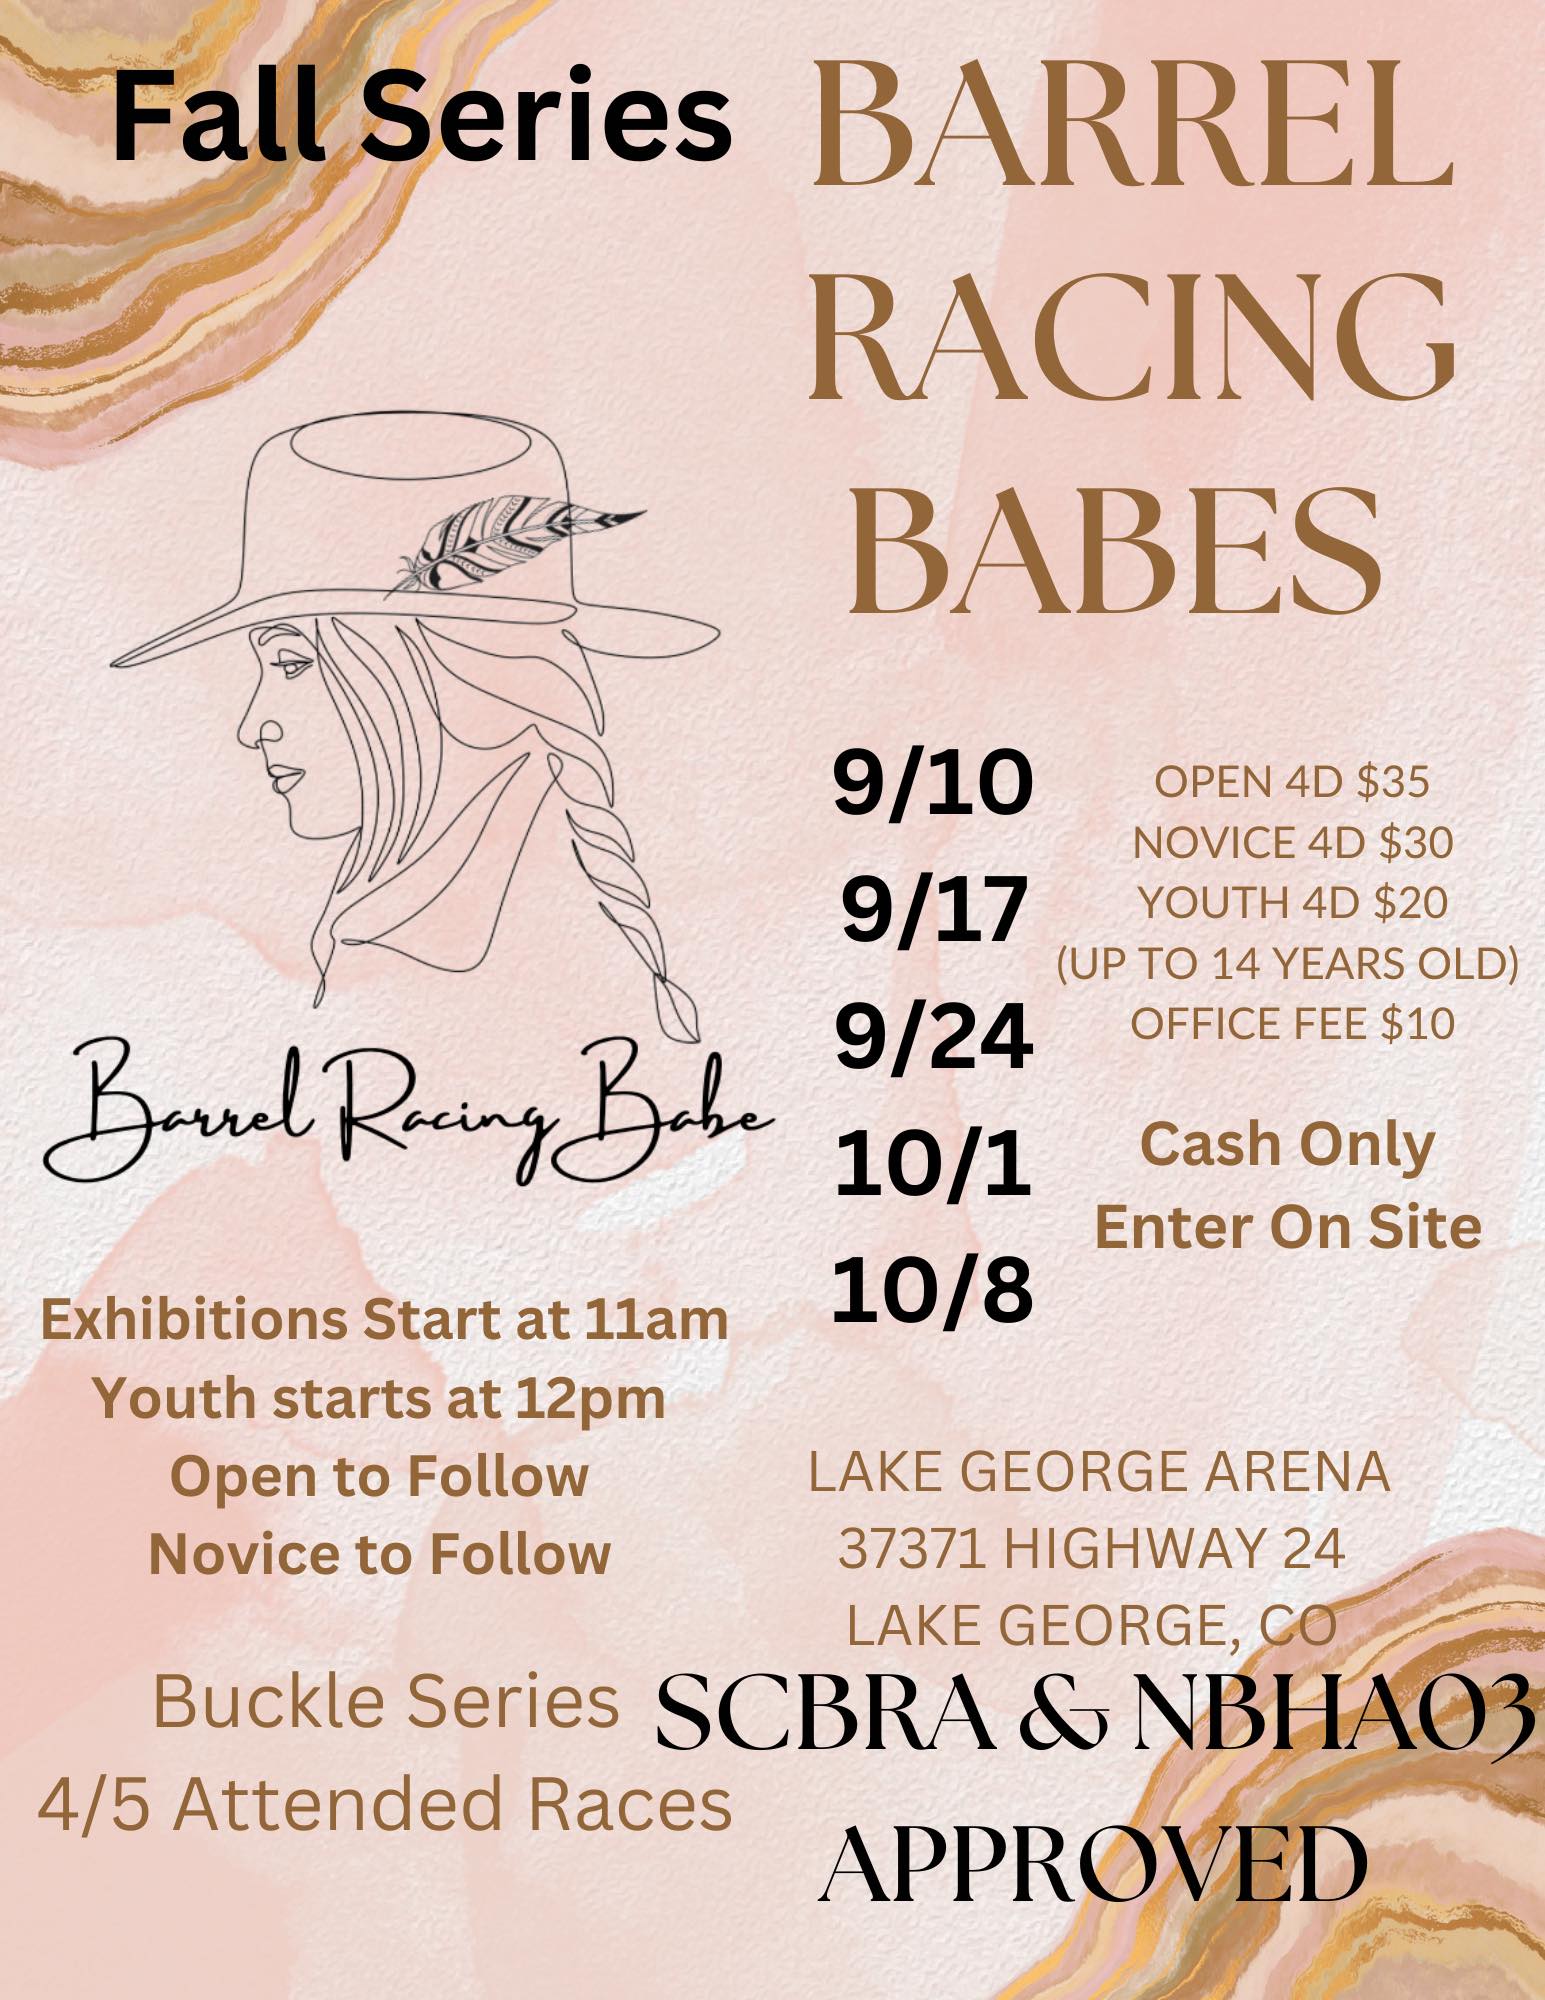 Barrel Racing Babes Fall Series